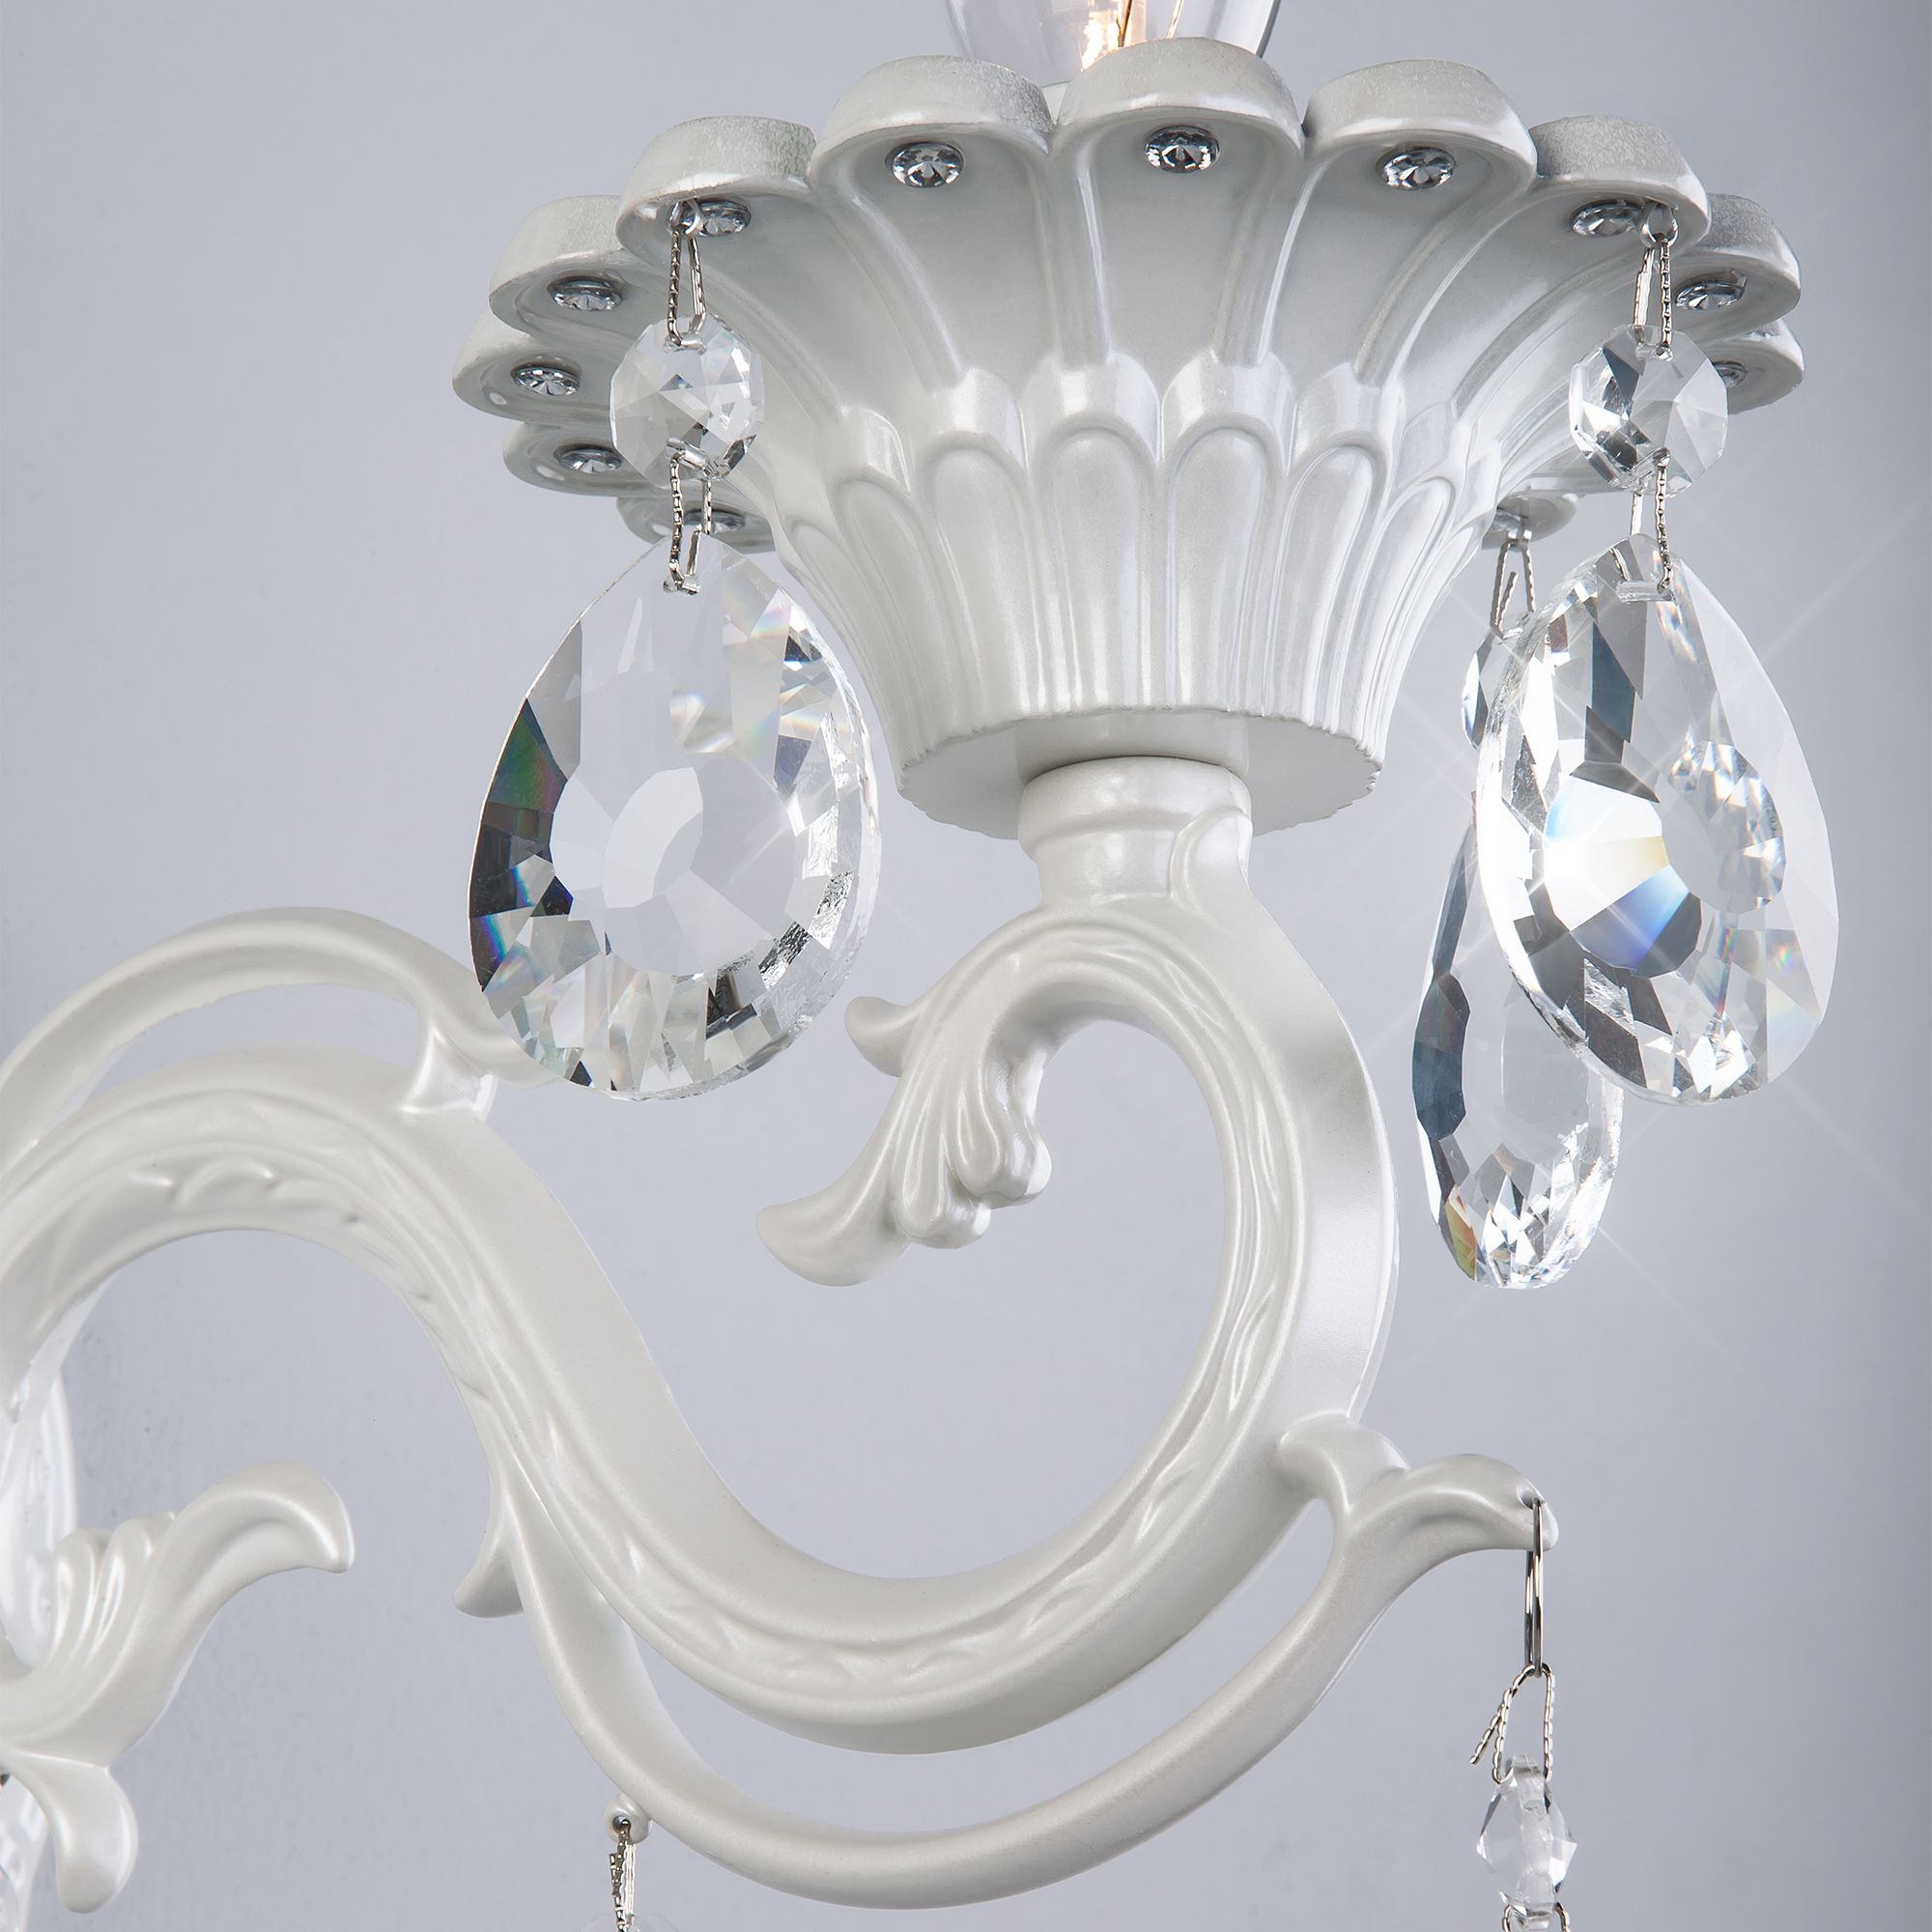 Настенный светильник с хрусталем Bogate's Tivoli 294/1 белый. Фото 2